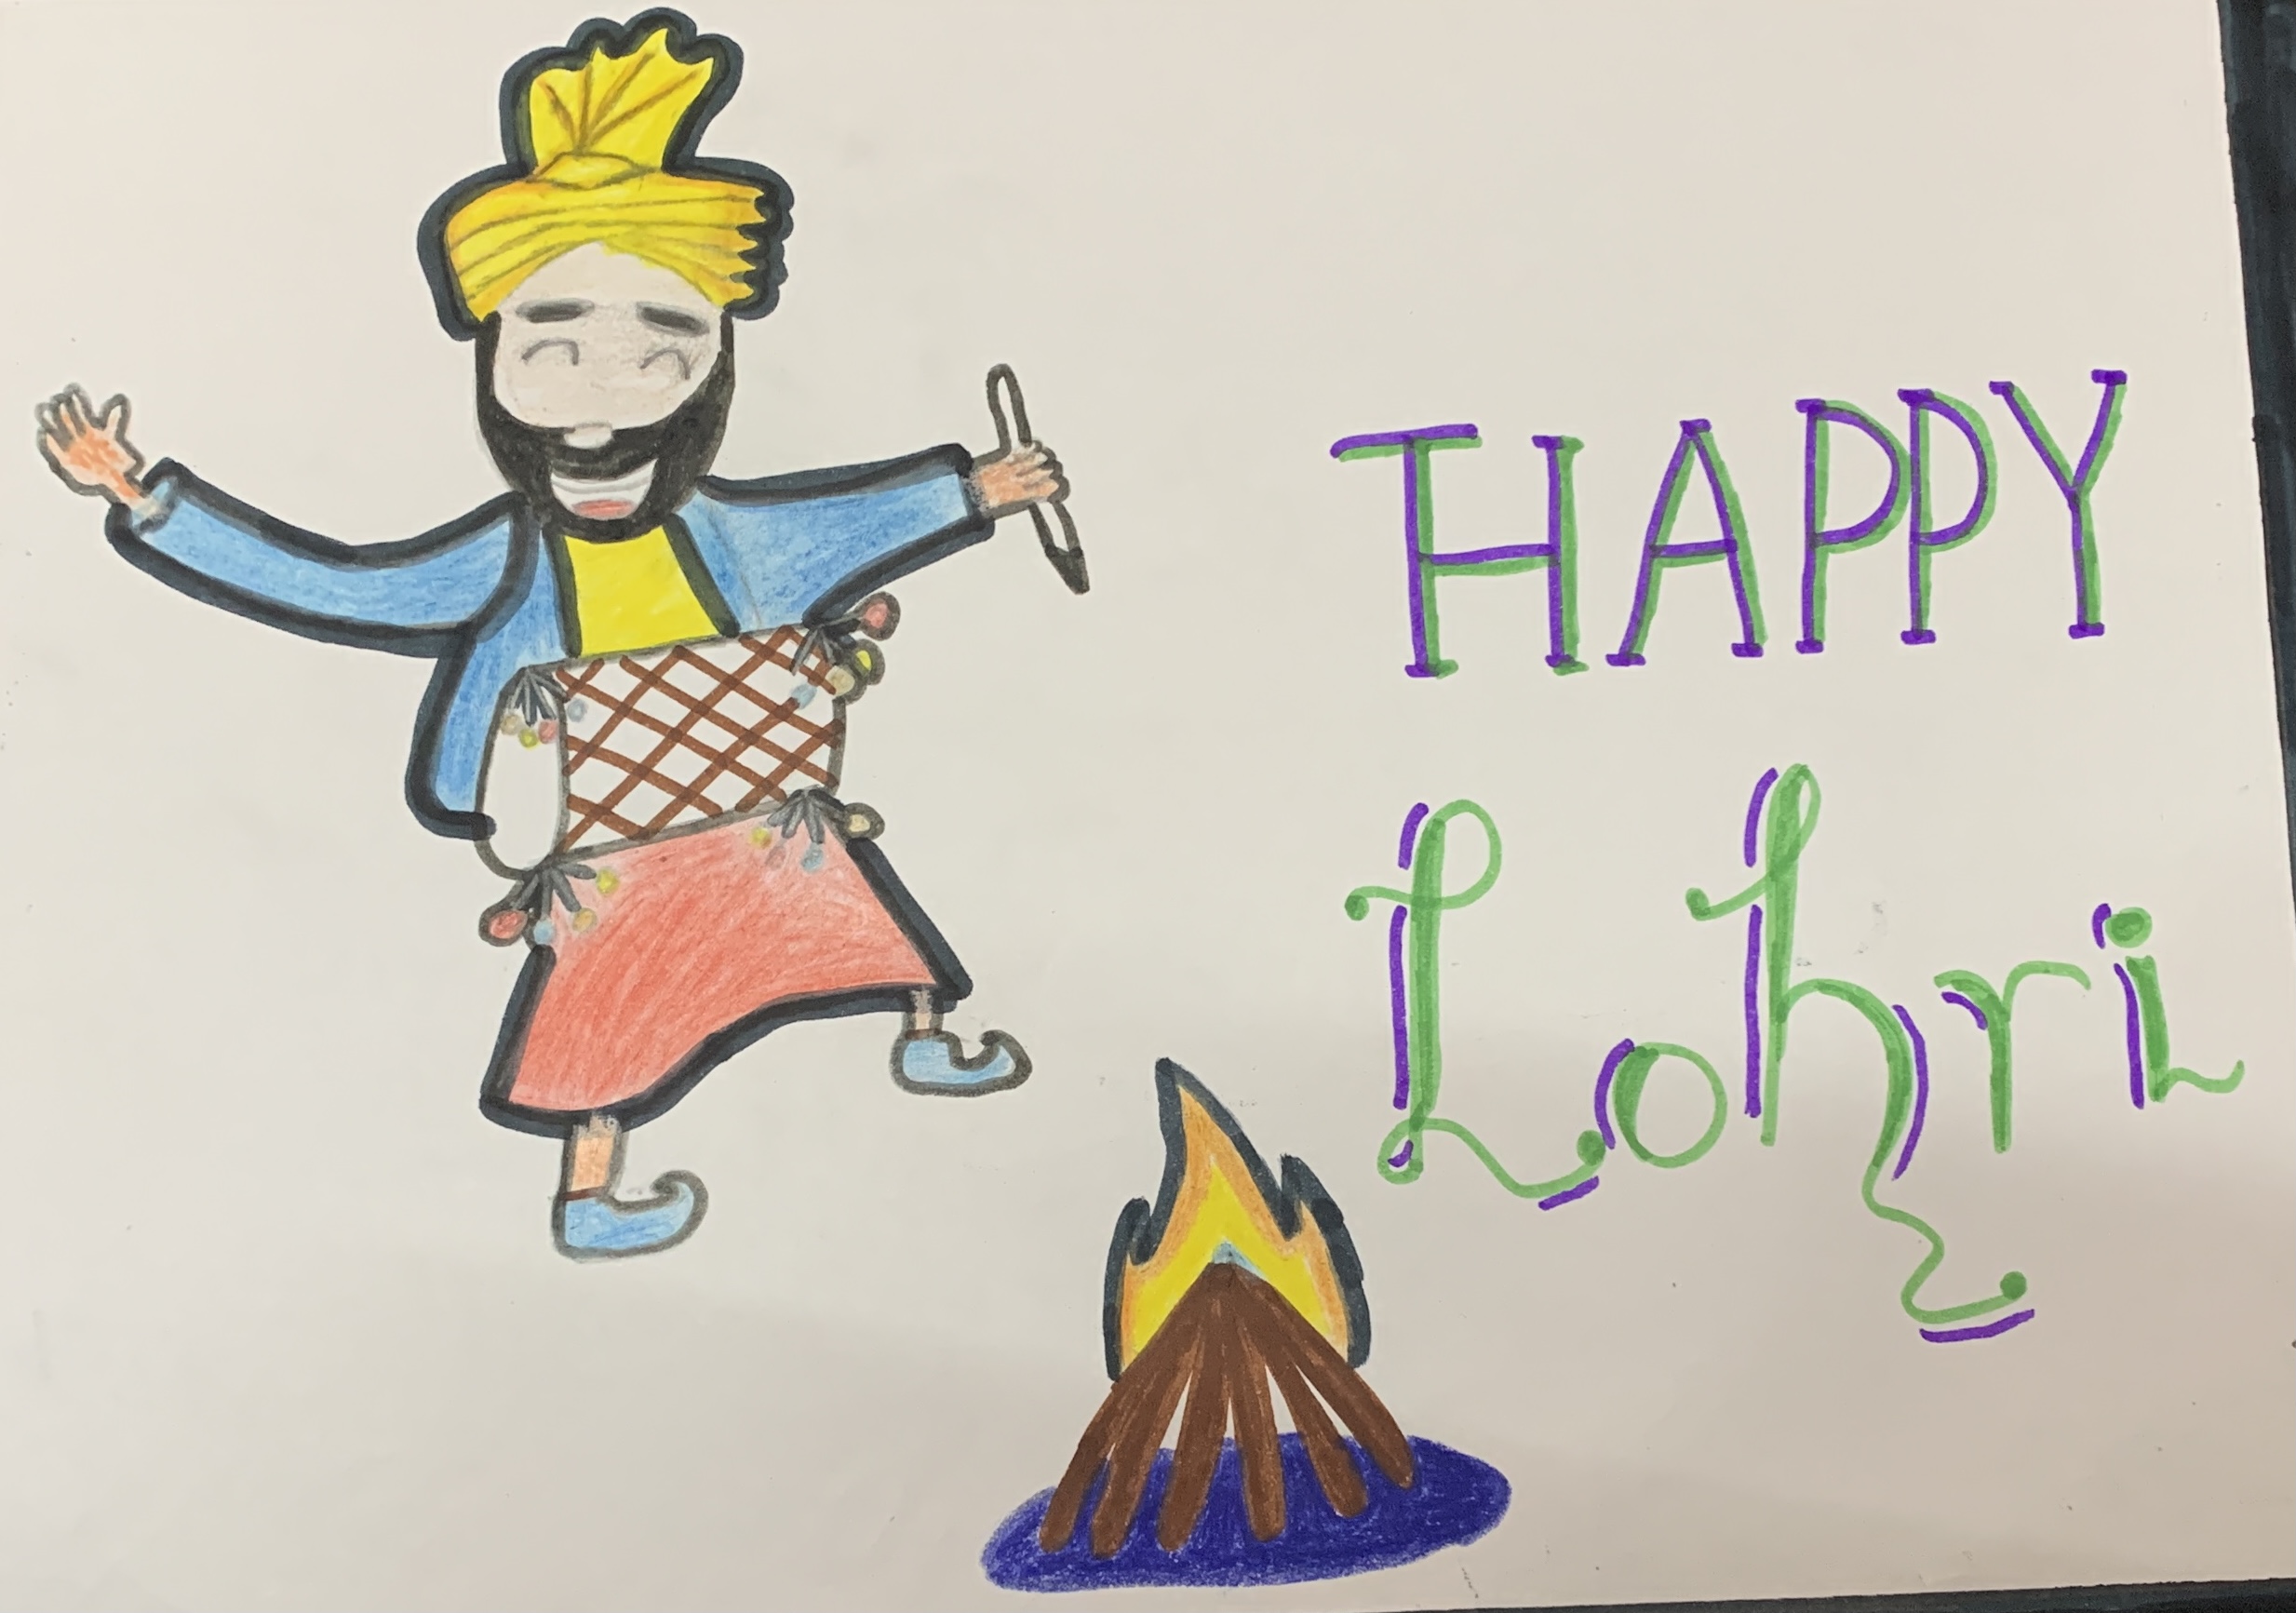 Lohri Festival Line Art: Over 98 Royalty-Free Licensable Stock  Illustrations & Drawings | Shutterstock